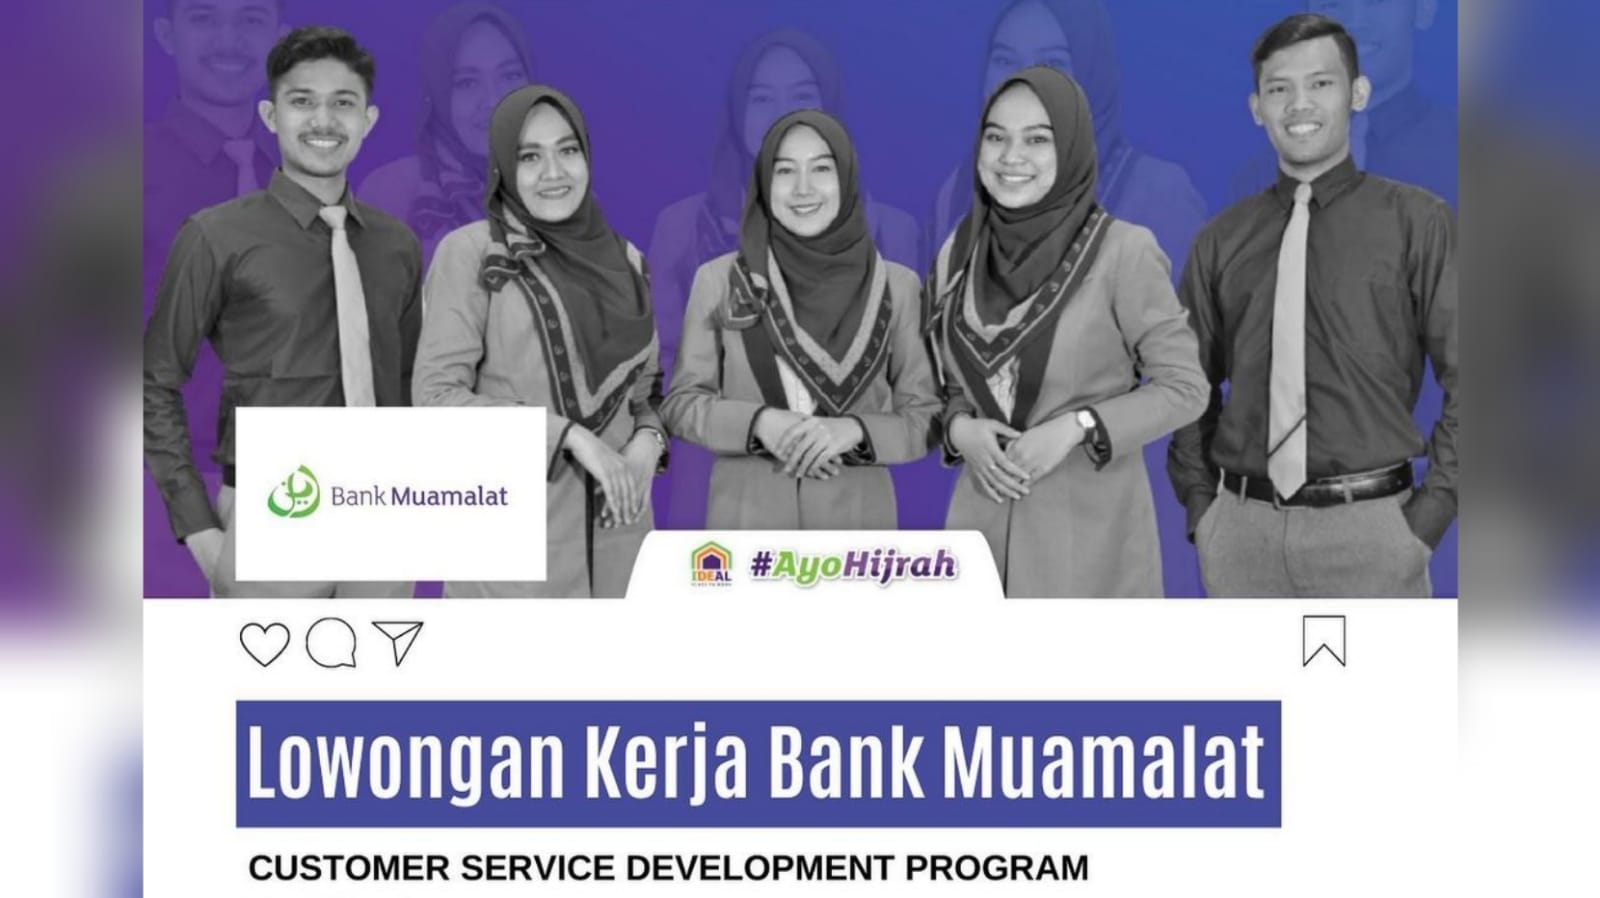 Bank Muamalat Indonesia Buka Lowongan Kerja Terbaru Untuk Lulusan D3 dan S1, Syaratnya Mudah